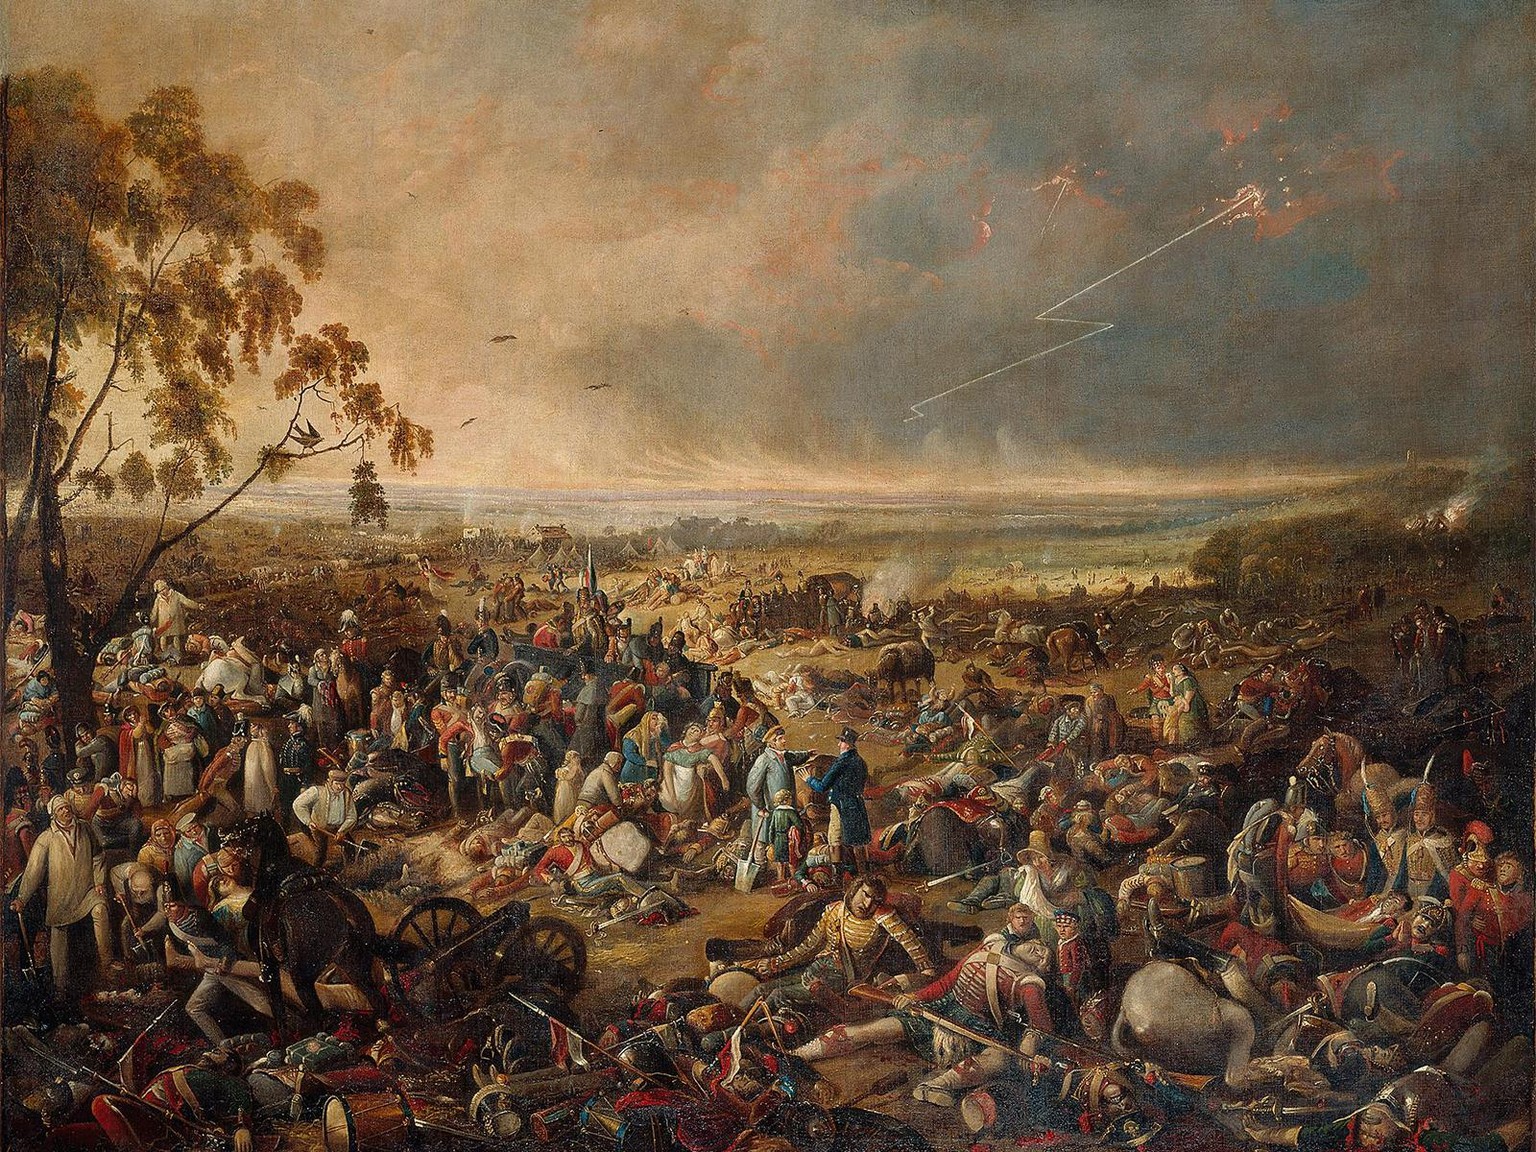 Am Morgen nach der Schlacht von Waterloo am 19. Juni 1815. Gemälde von John Heaviside Clark und Matthew Dubourg, um 1816.
https://www.dhm.de/lemo/bestand/objekt/am-morgen-nach-der-schlacht-von-waterlo ...